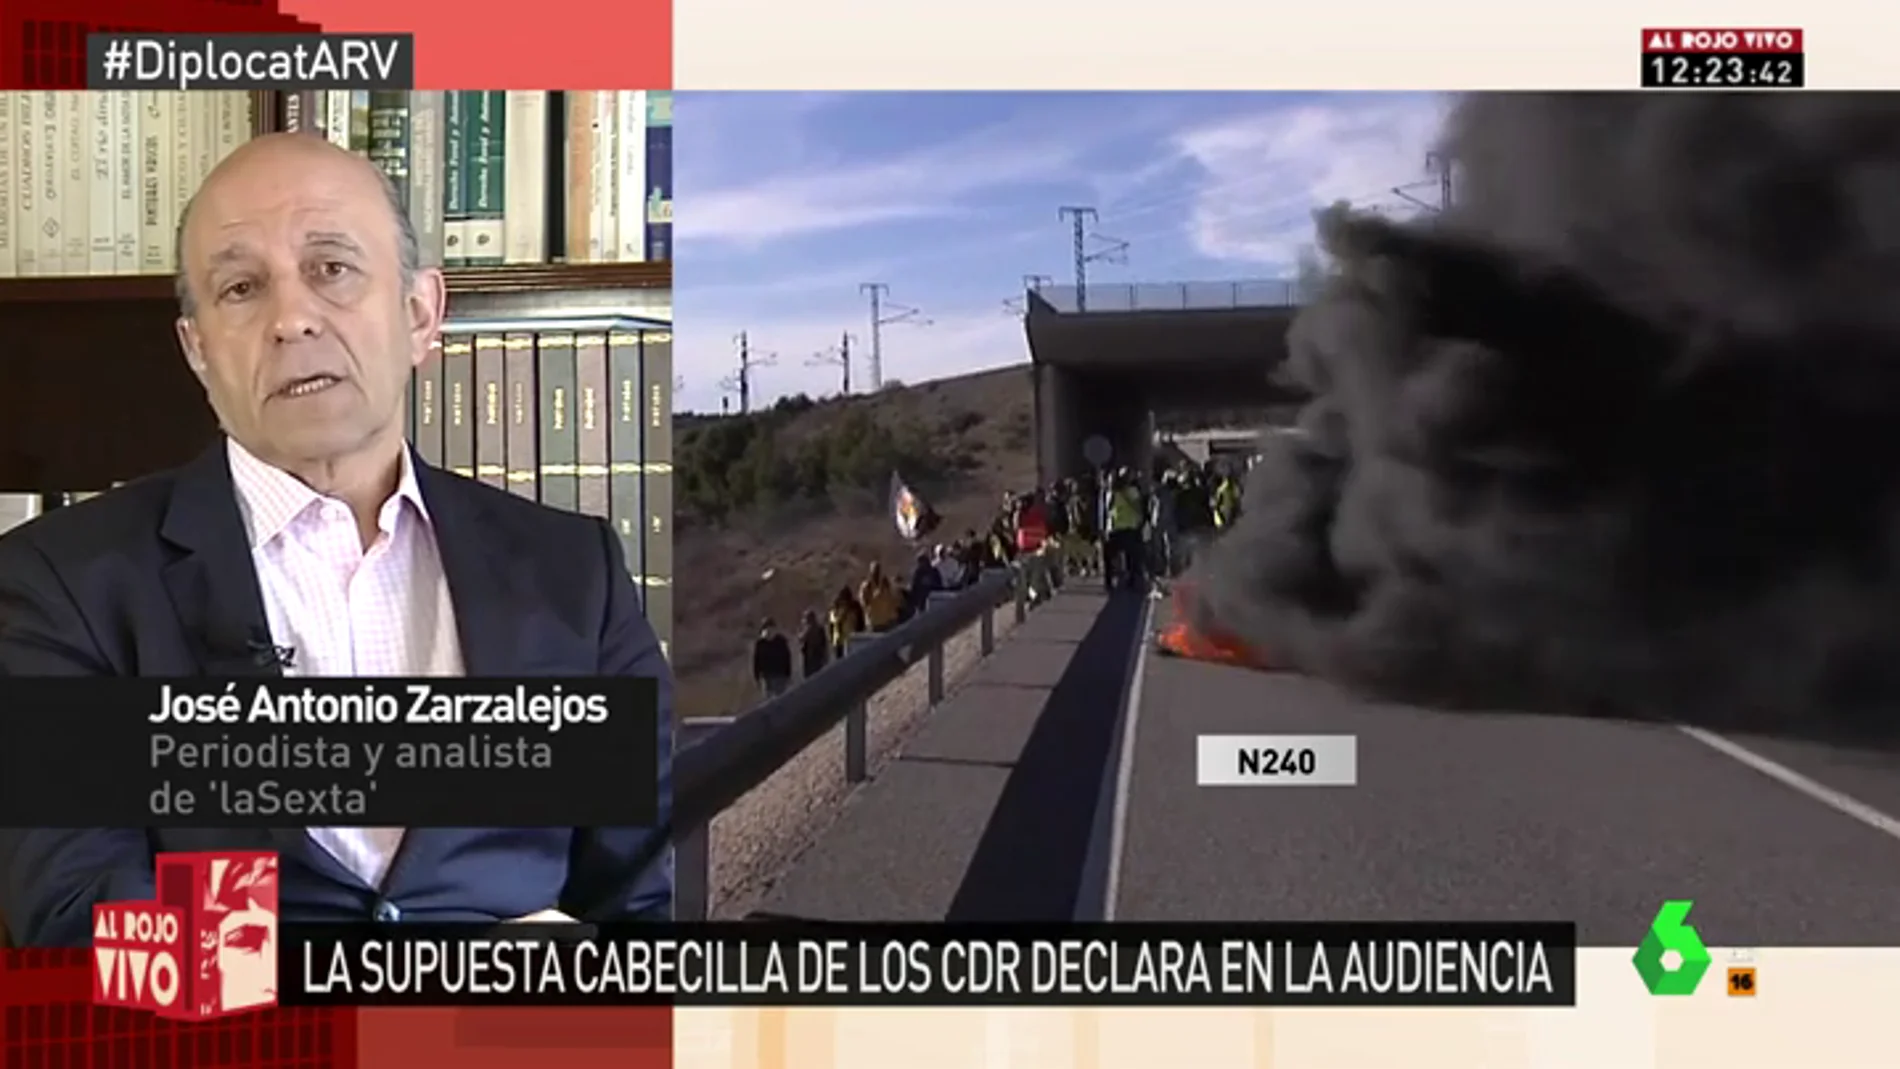 José Antonio Zarzalejos: "Lo que hacen los CDR no es terrorismo, son actos vandálicos"